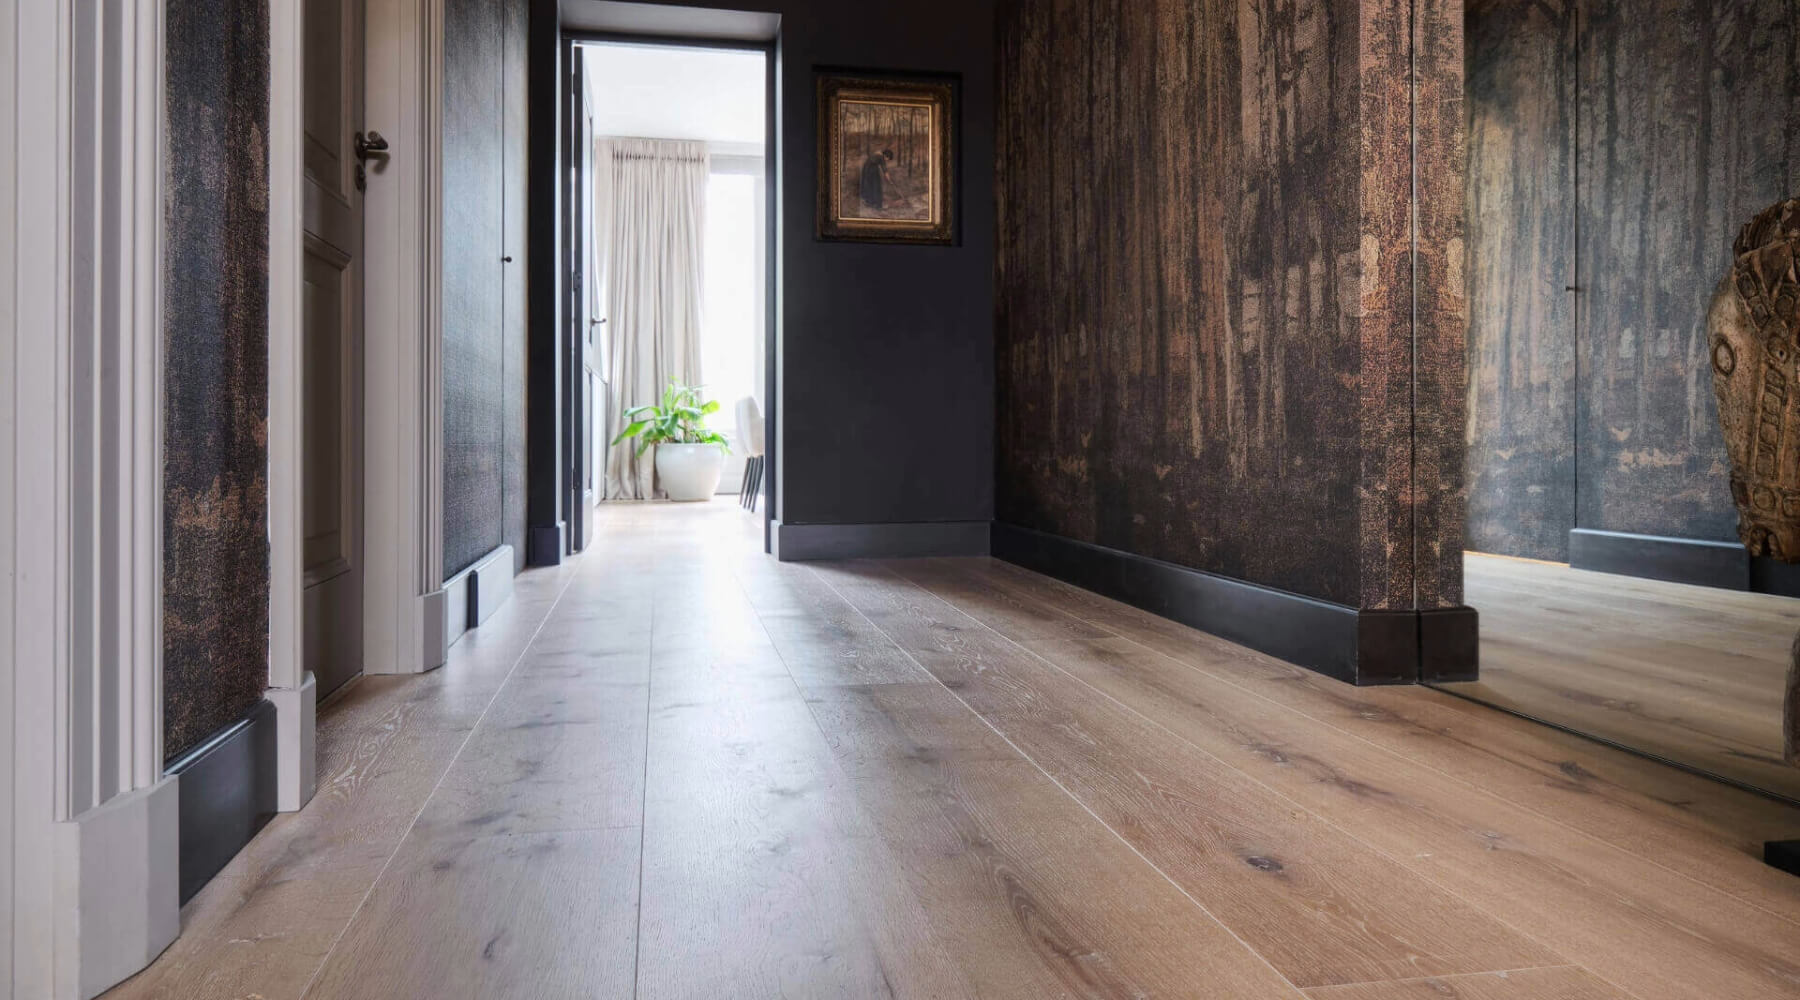 Brede houten planken vloer in hal van woning in Den Haag